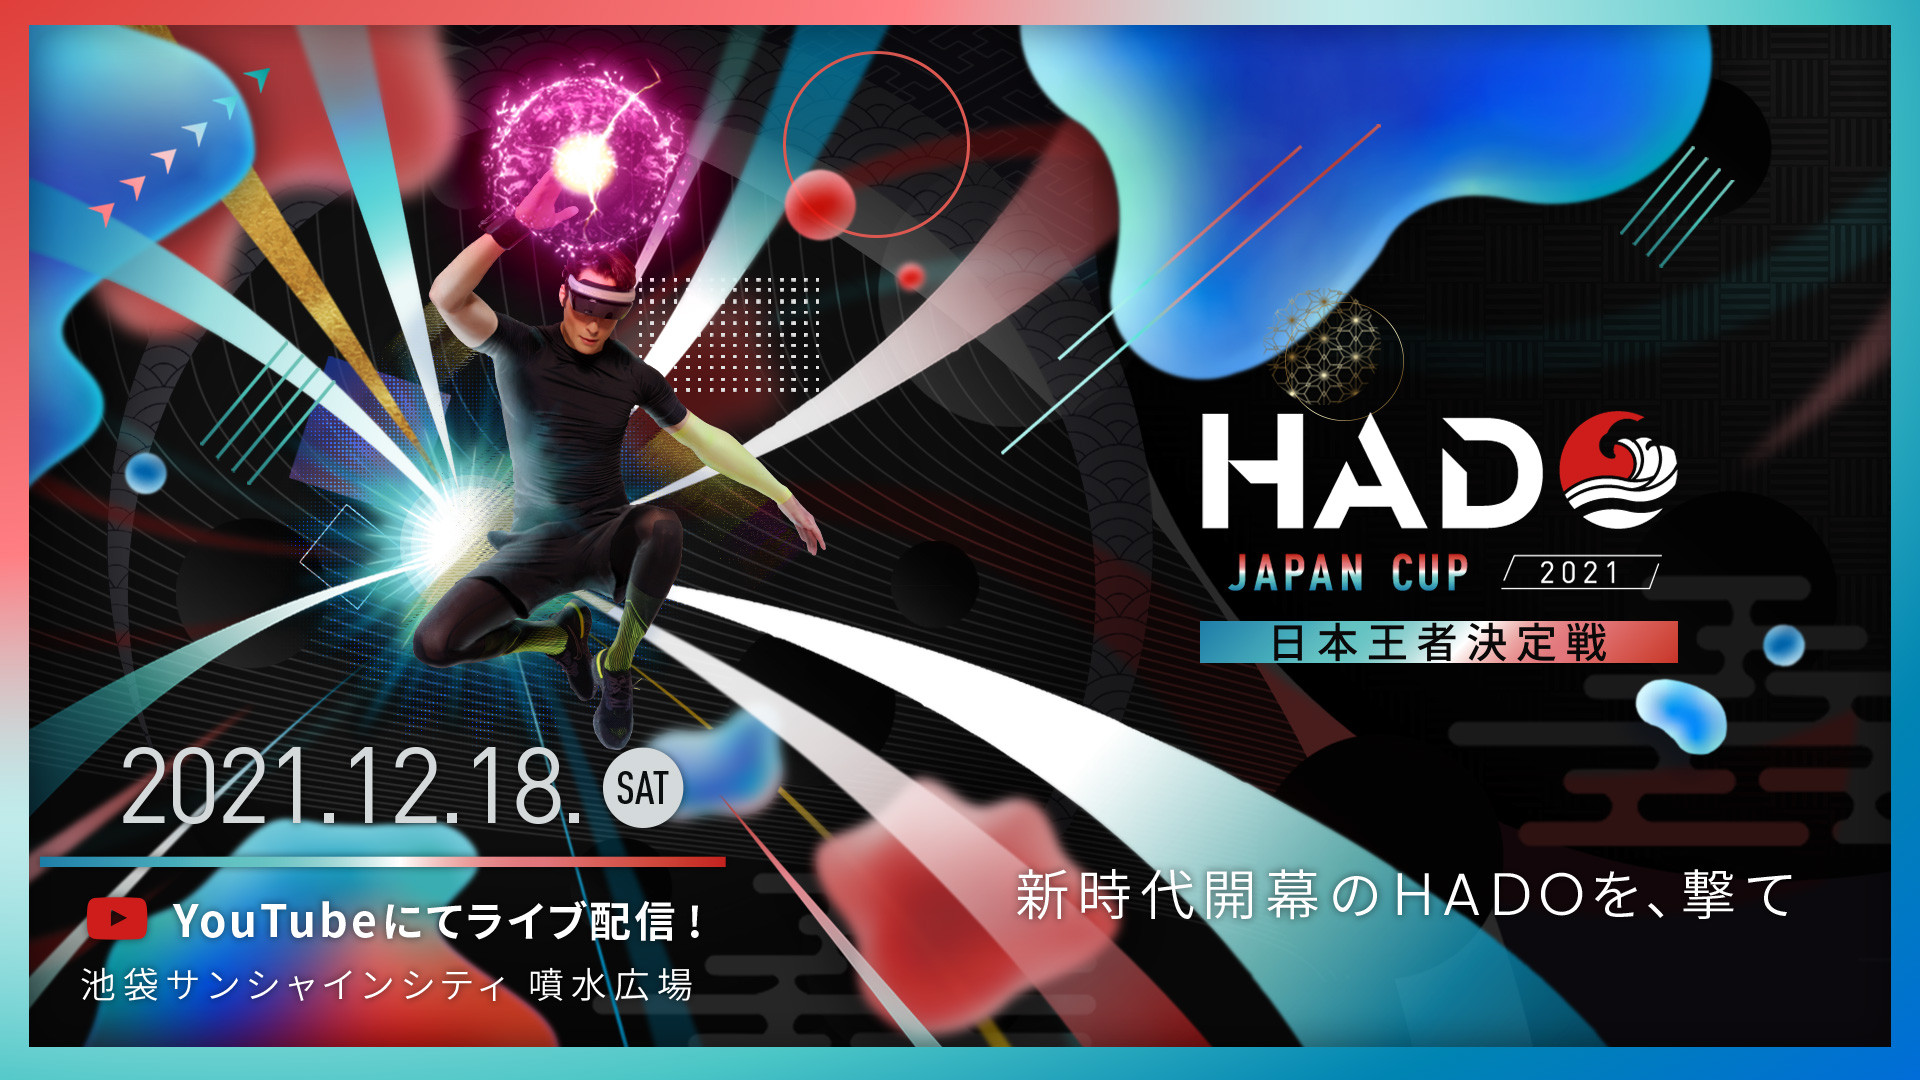 【大会情報】HADO JAPAN CUP 2021 決勝【2021年12月18日】